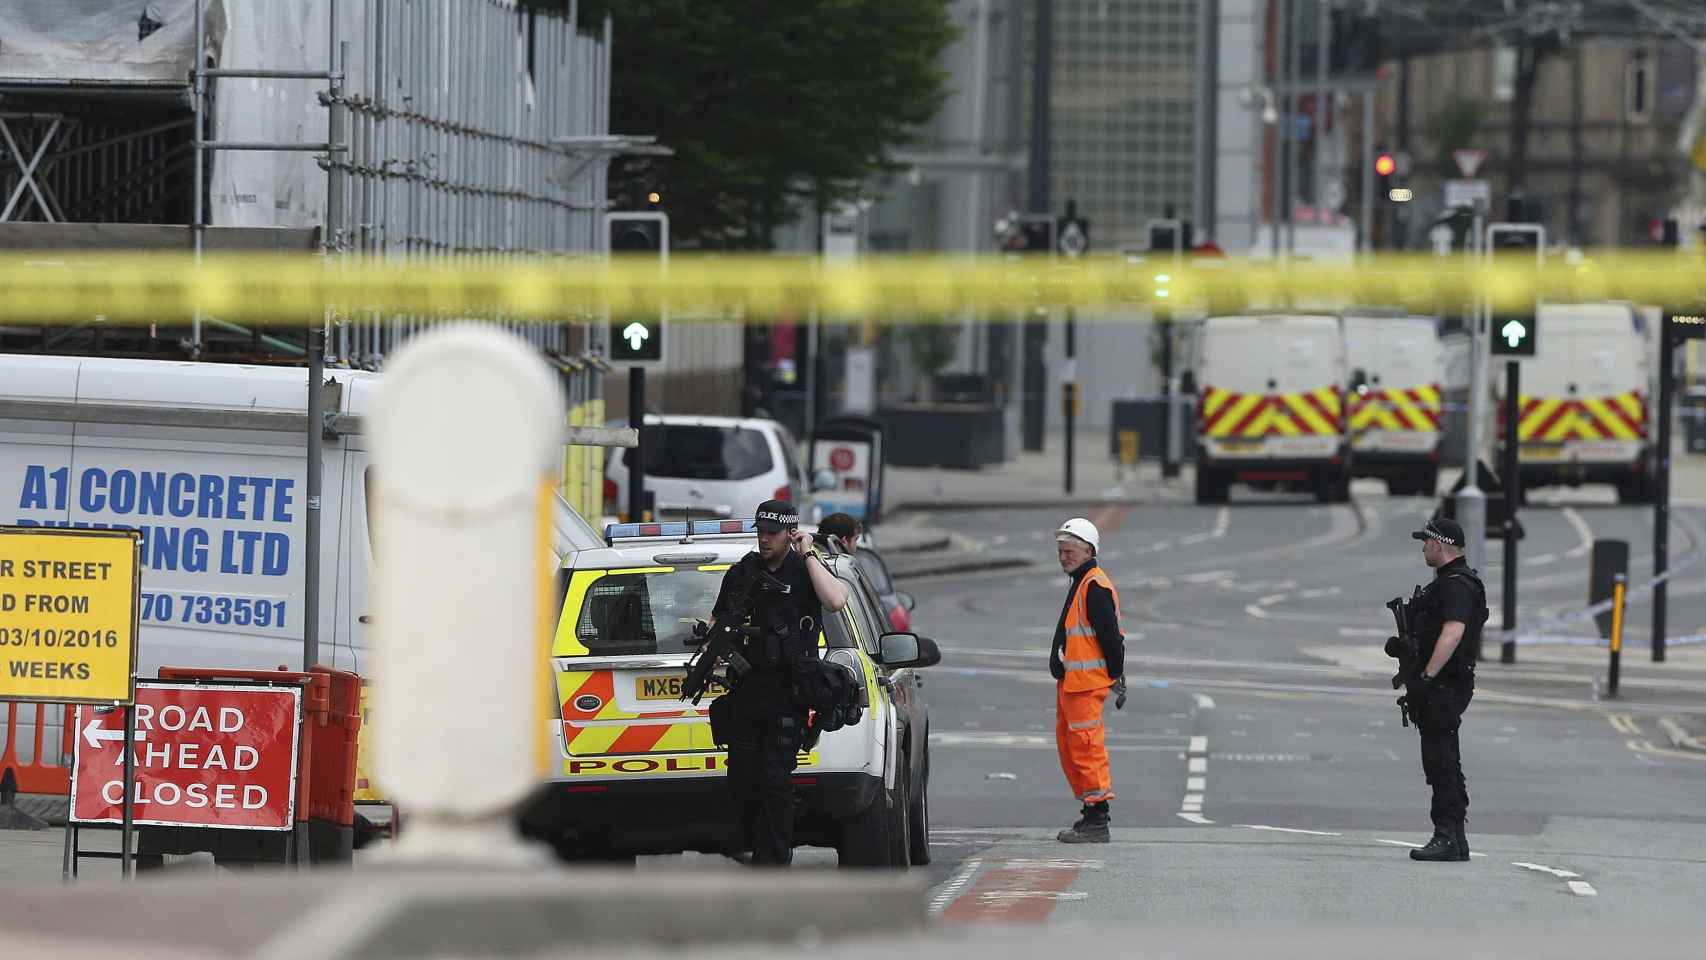 La zona en las inmediaciones del Manchester Arena y la estación Victoria, acordonada tras el atentado reivindicado por Estado Islámico / EFE